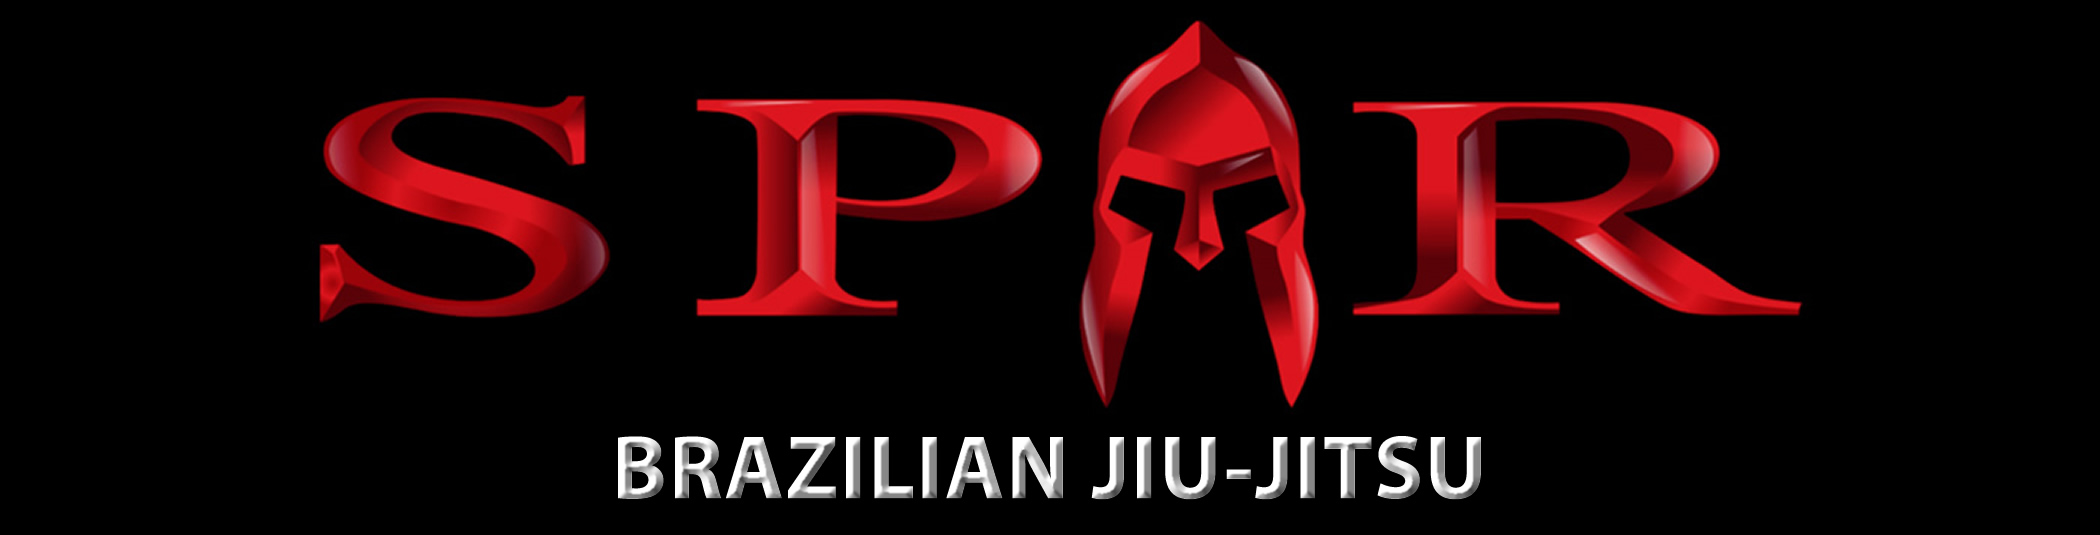 Brazilian Jiu-Jitsu Buffalo New York